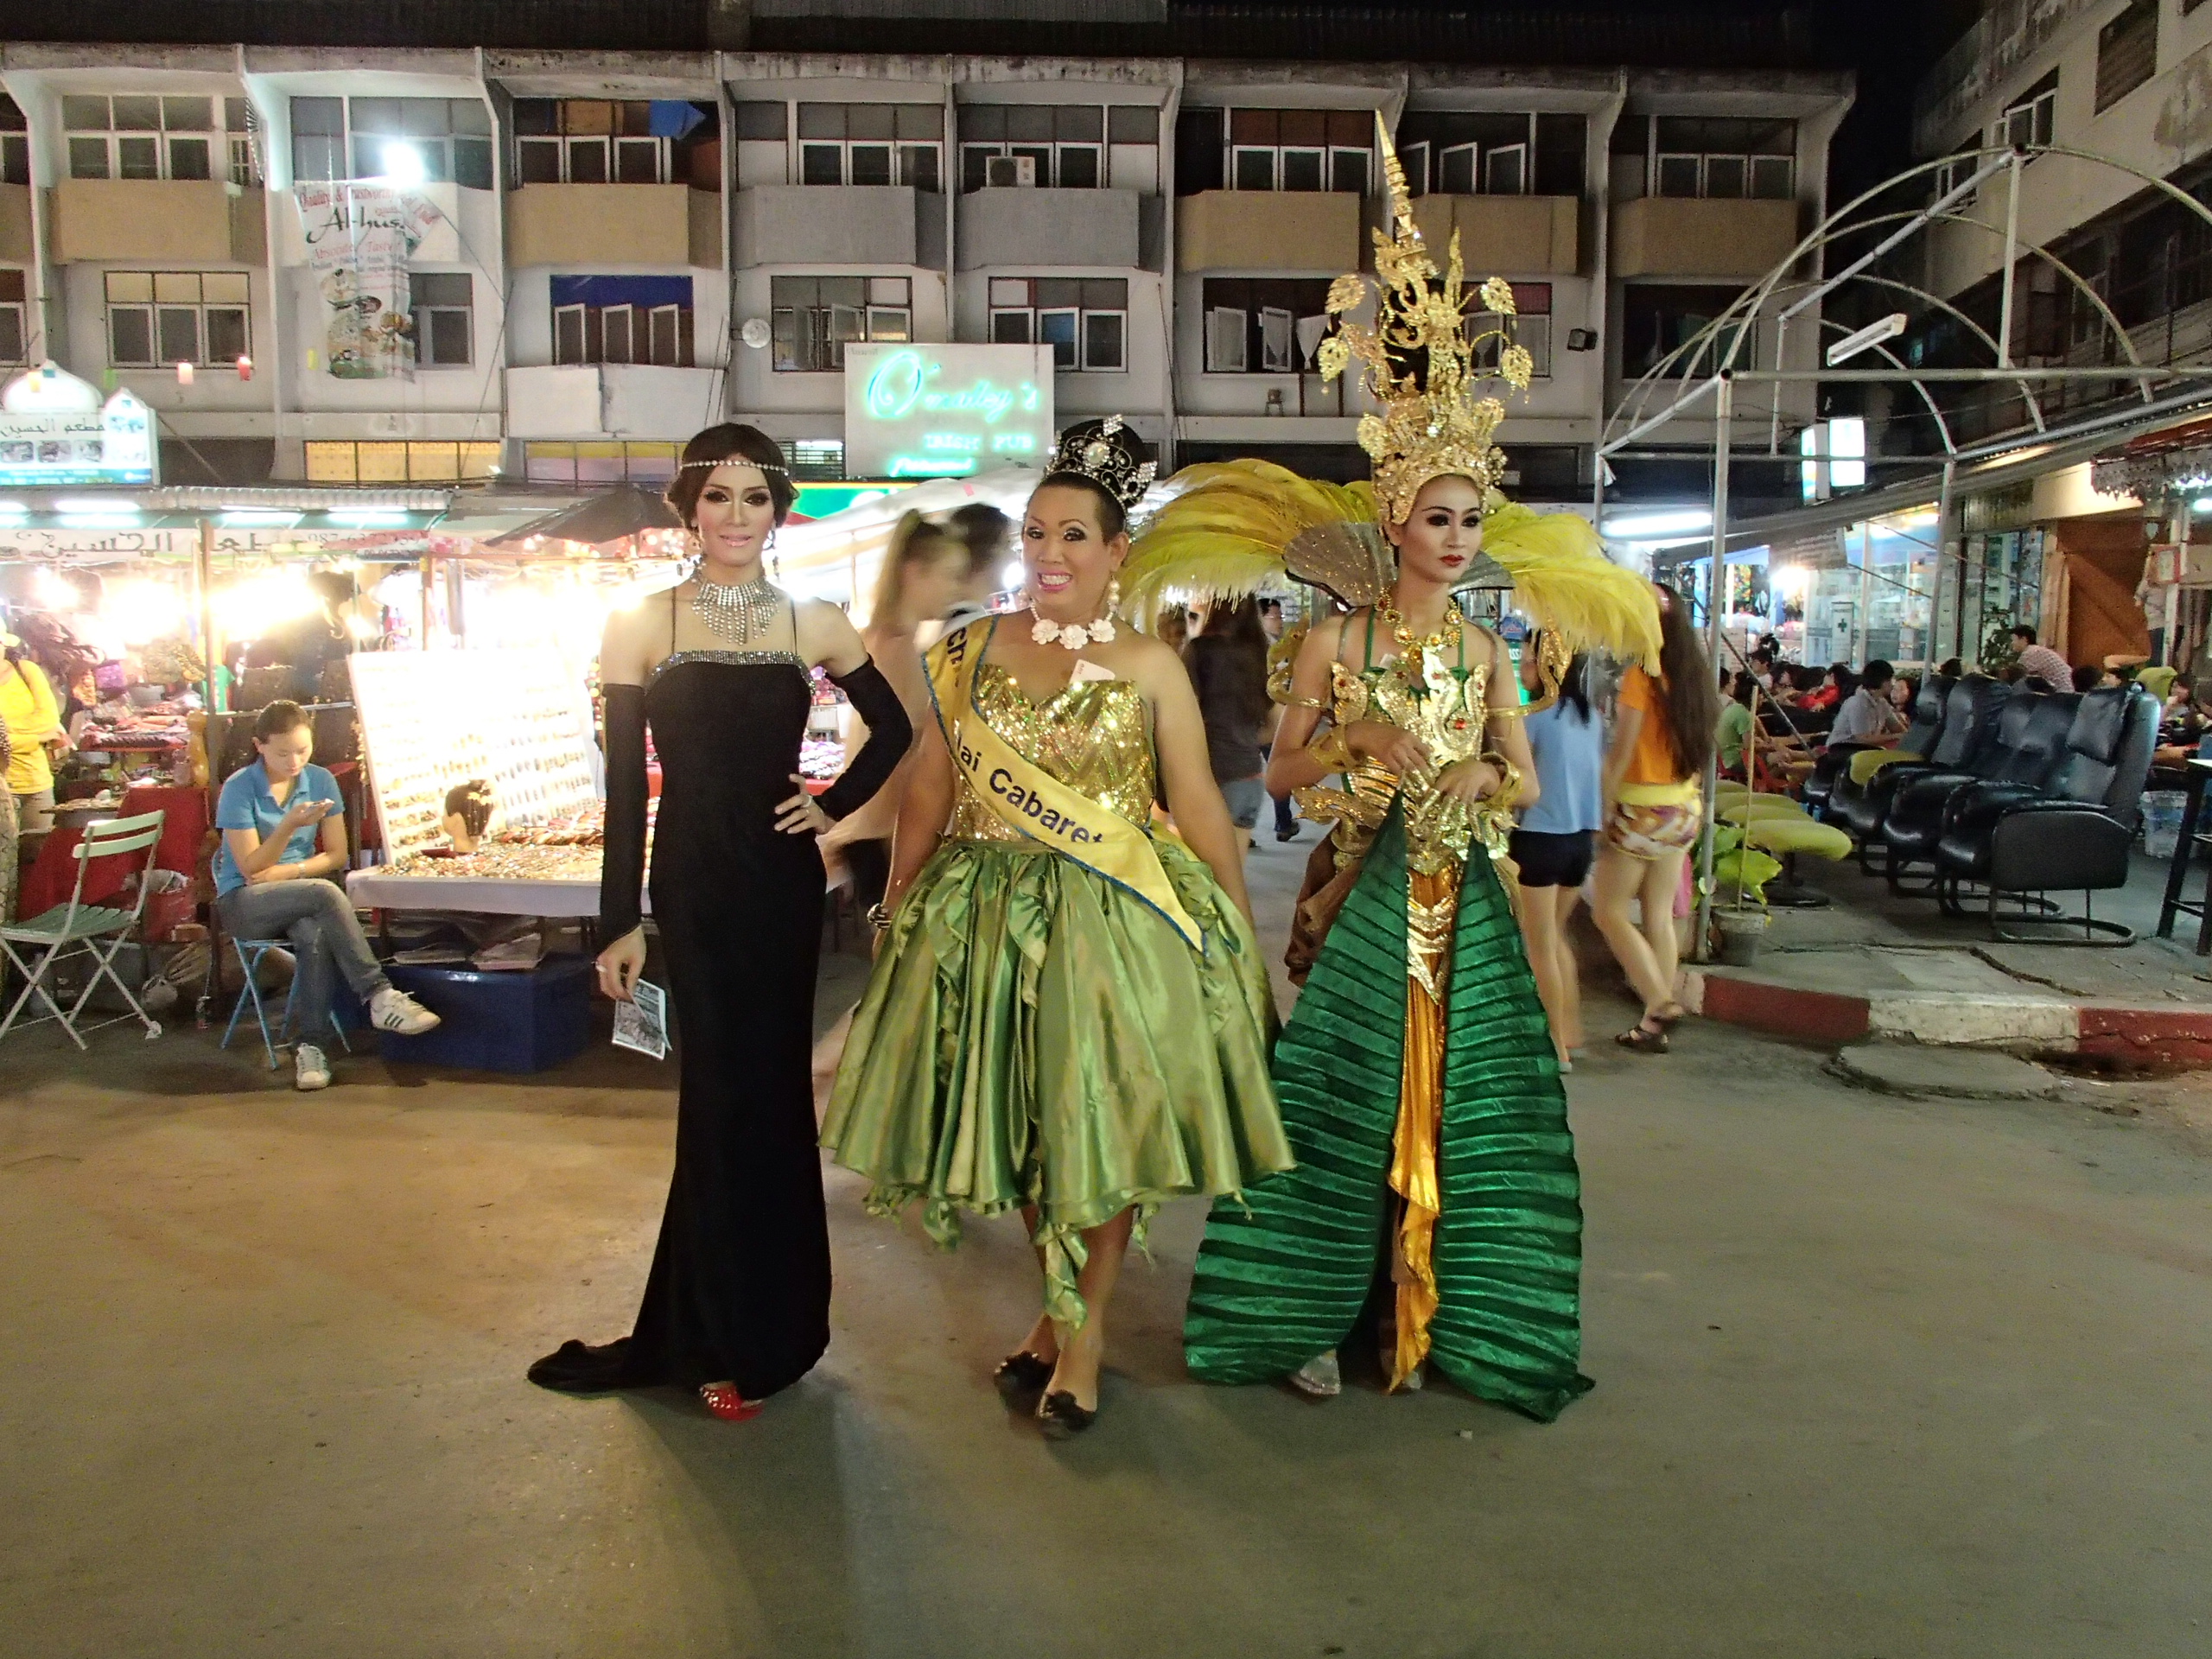 Night Bazaar Chiang Mai